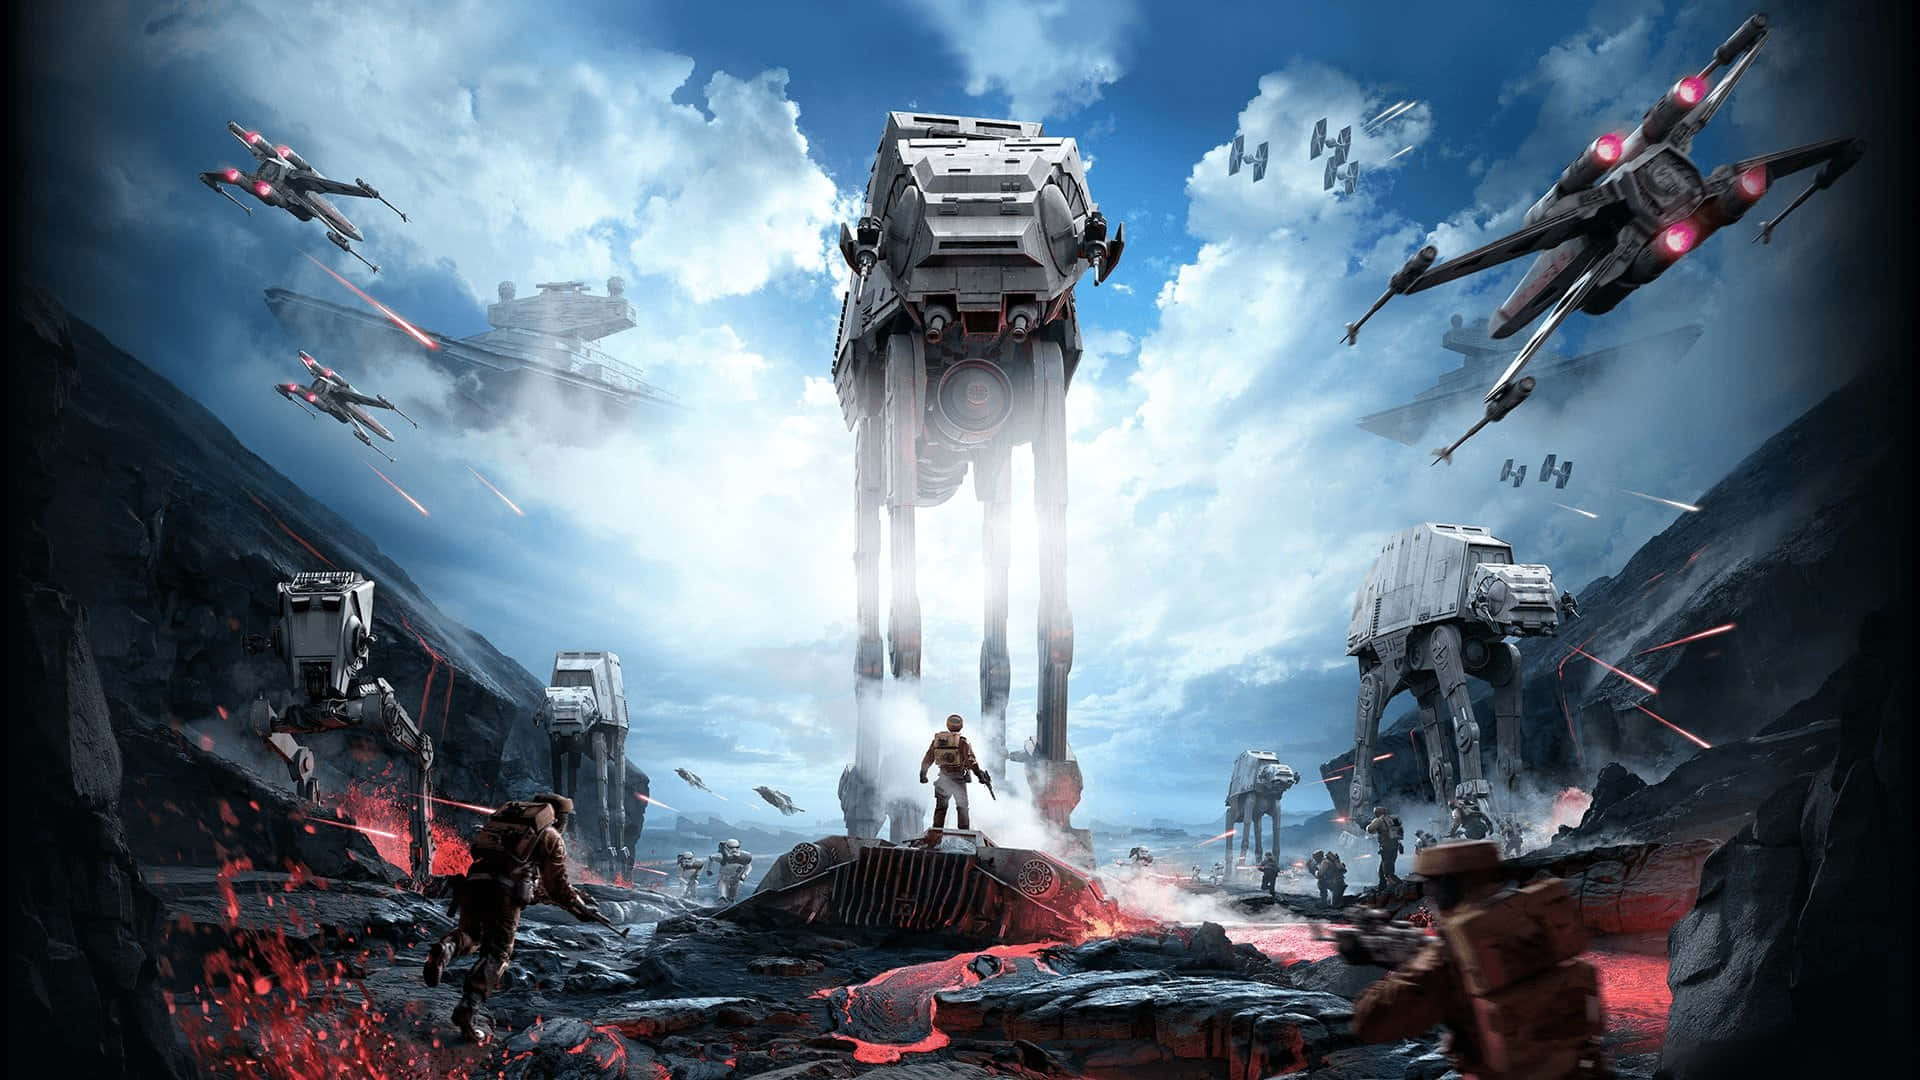 Imagende Star Wars: Batalla Bajo Un Cielo Nublado